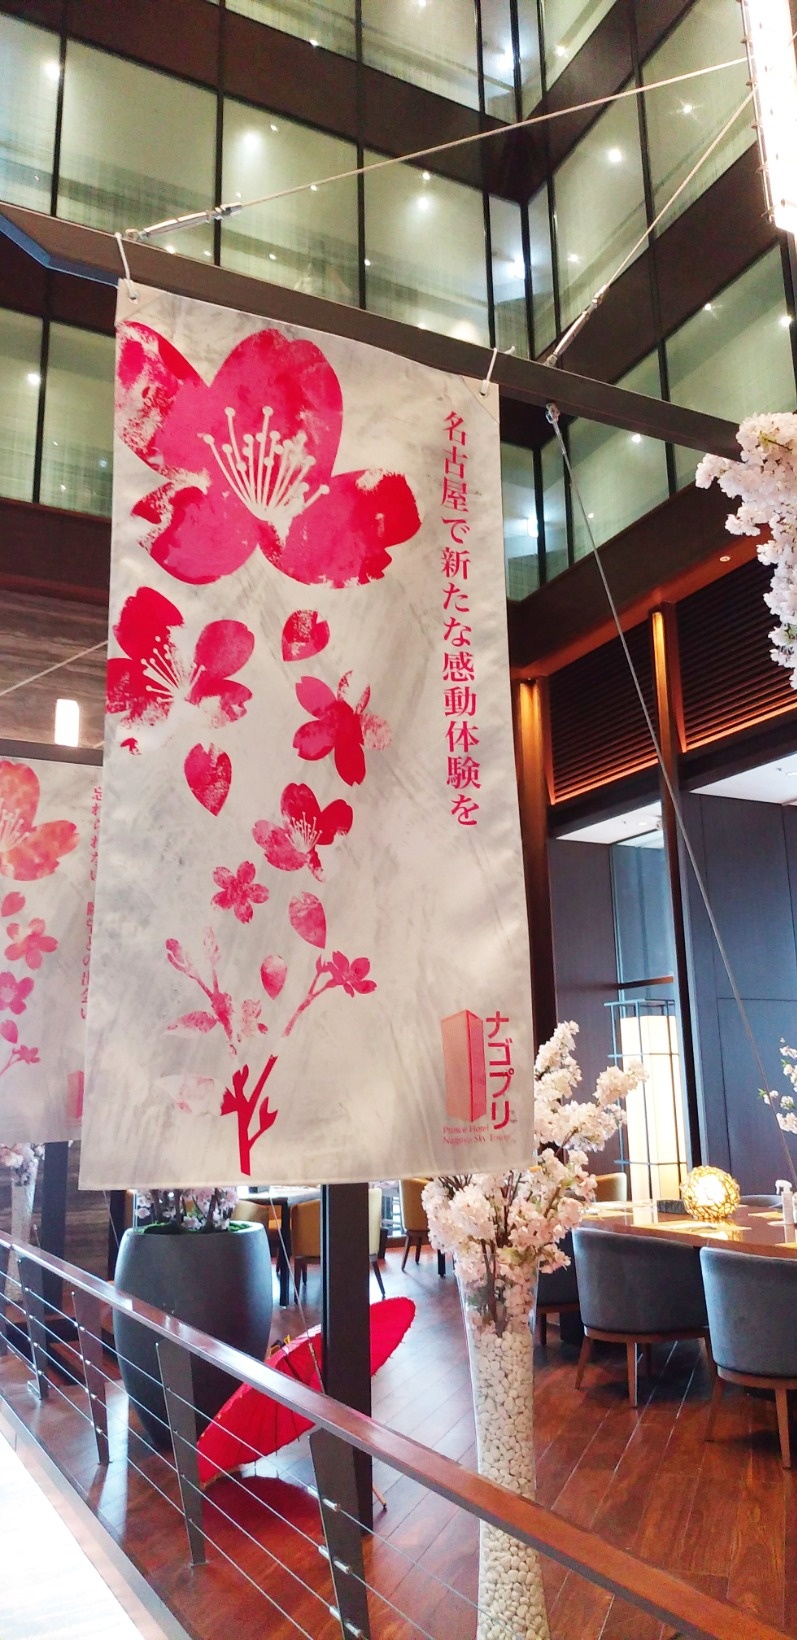 名古屋プリンスホテルスカイタワー様の2021春のロビー装飾を行いました。1